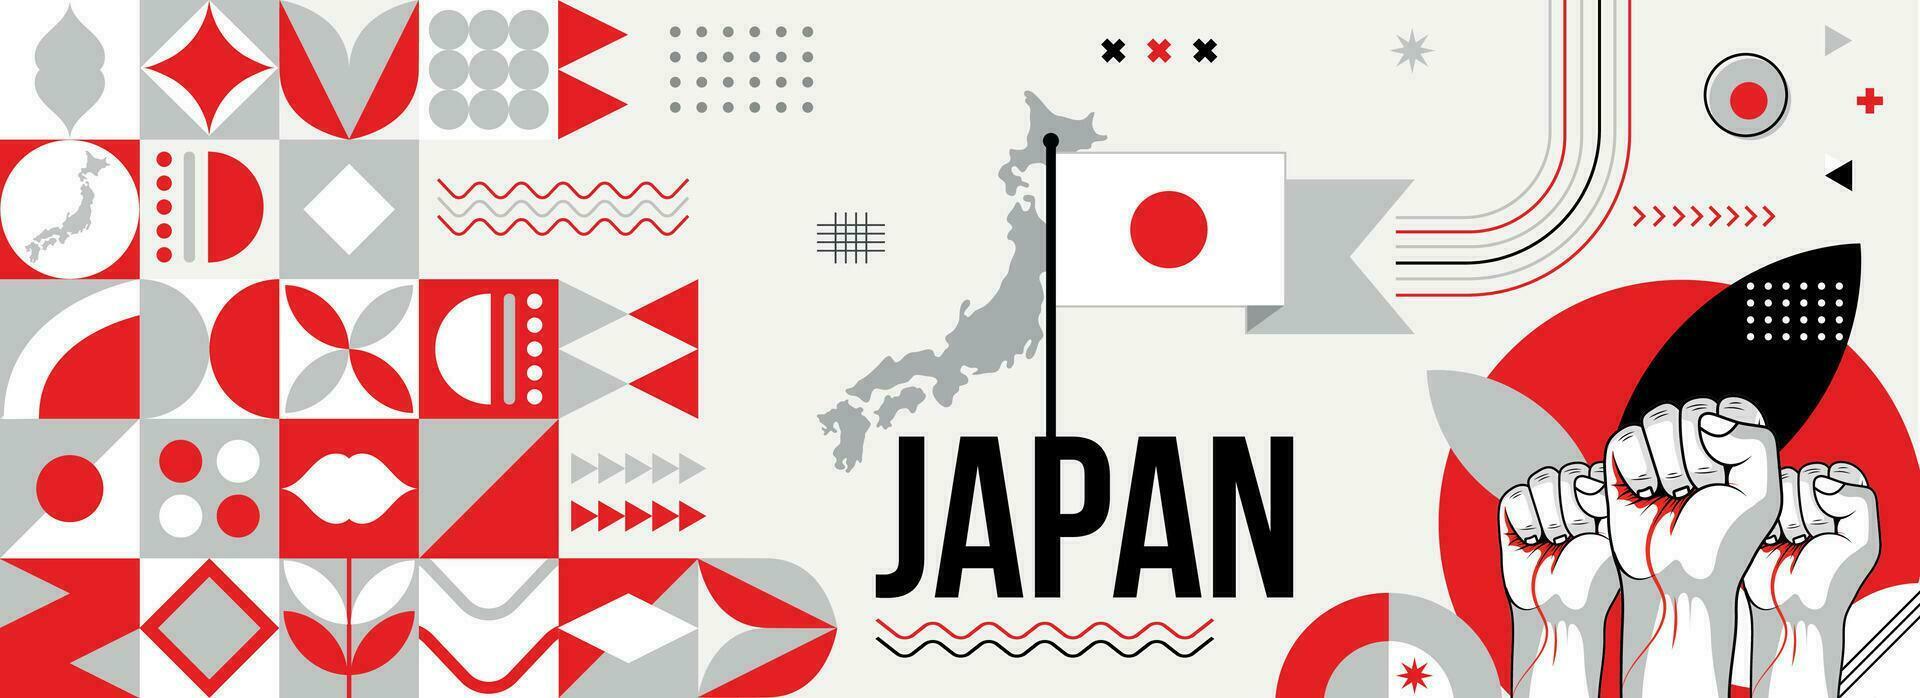 Japan nationaal of onafhankelijkheid dag banier voor land viering. vlag en kaart van Japan met verheven vuisten. modern retro ontwerp met typografie abstract meetkundig pictogrammen . vector illustratie.